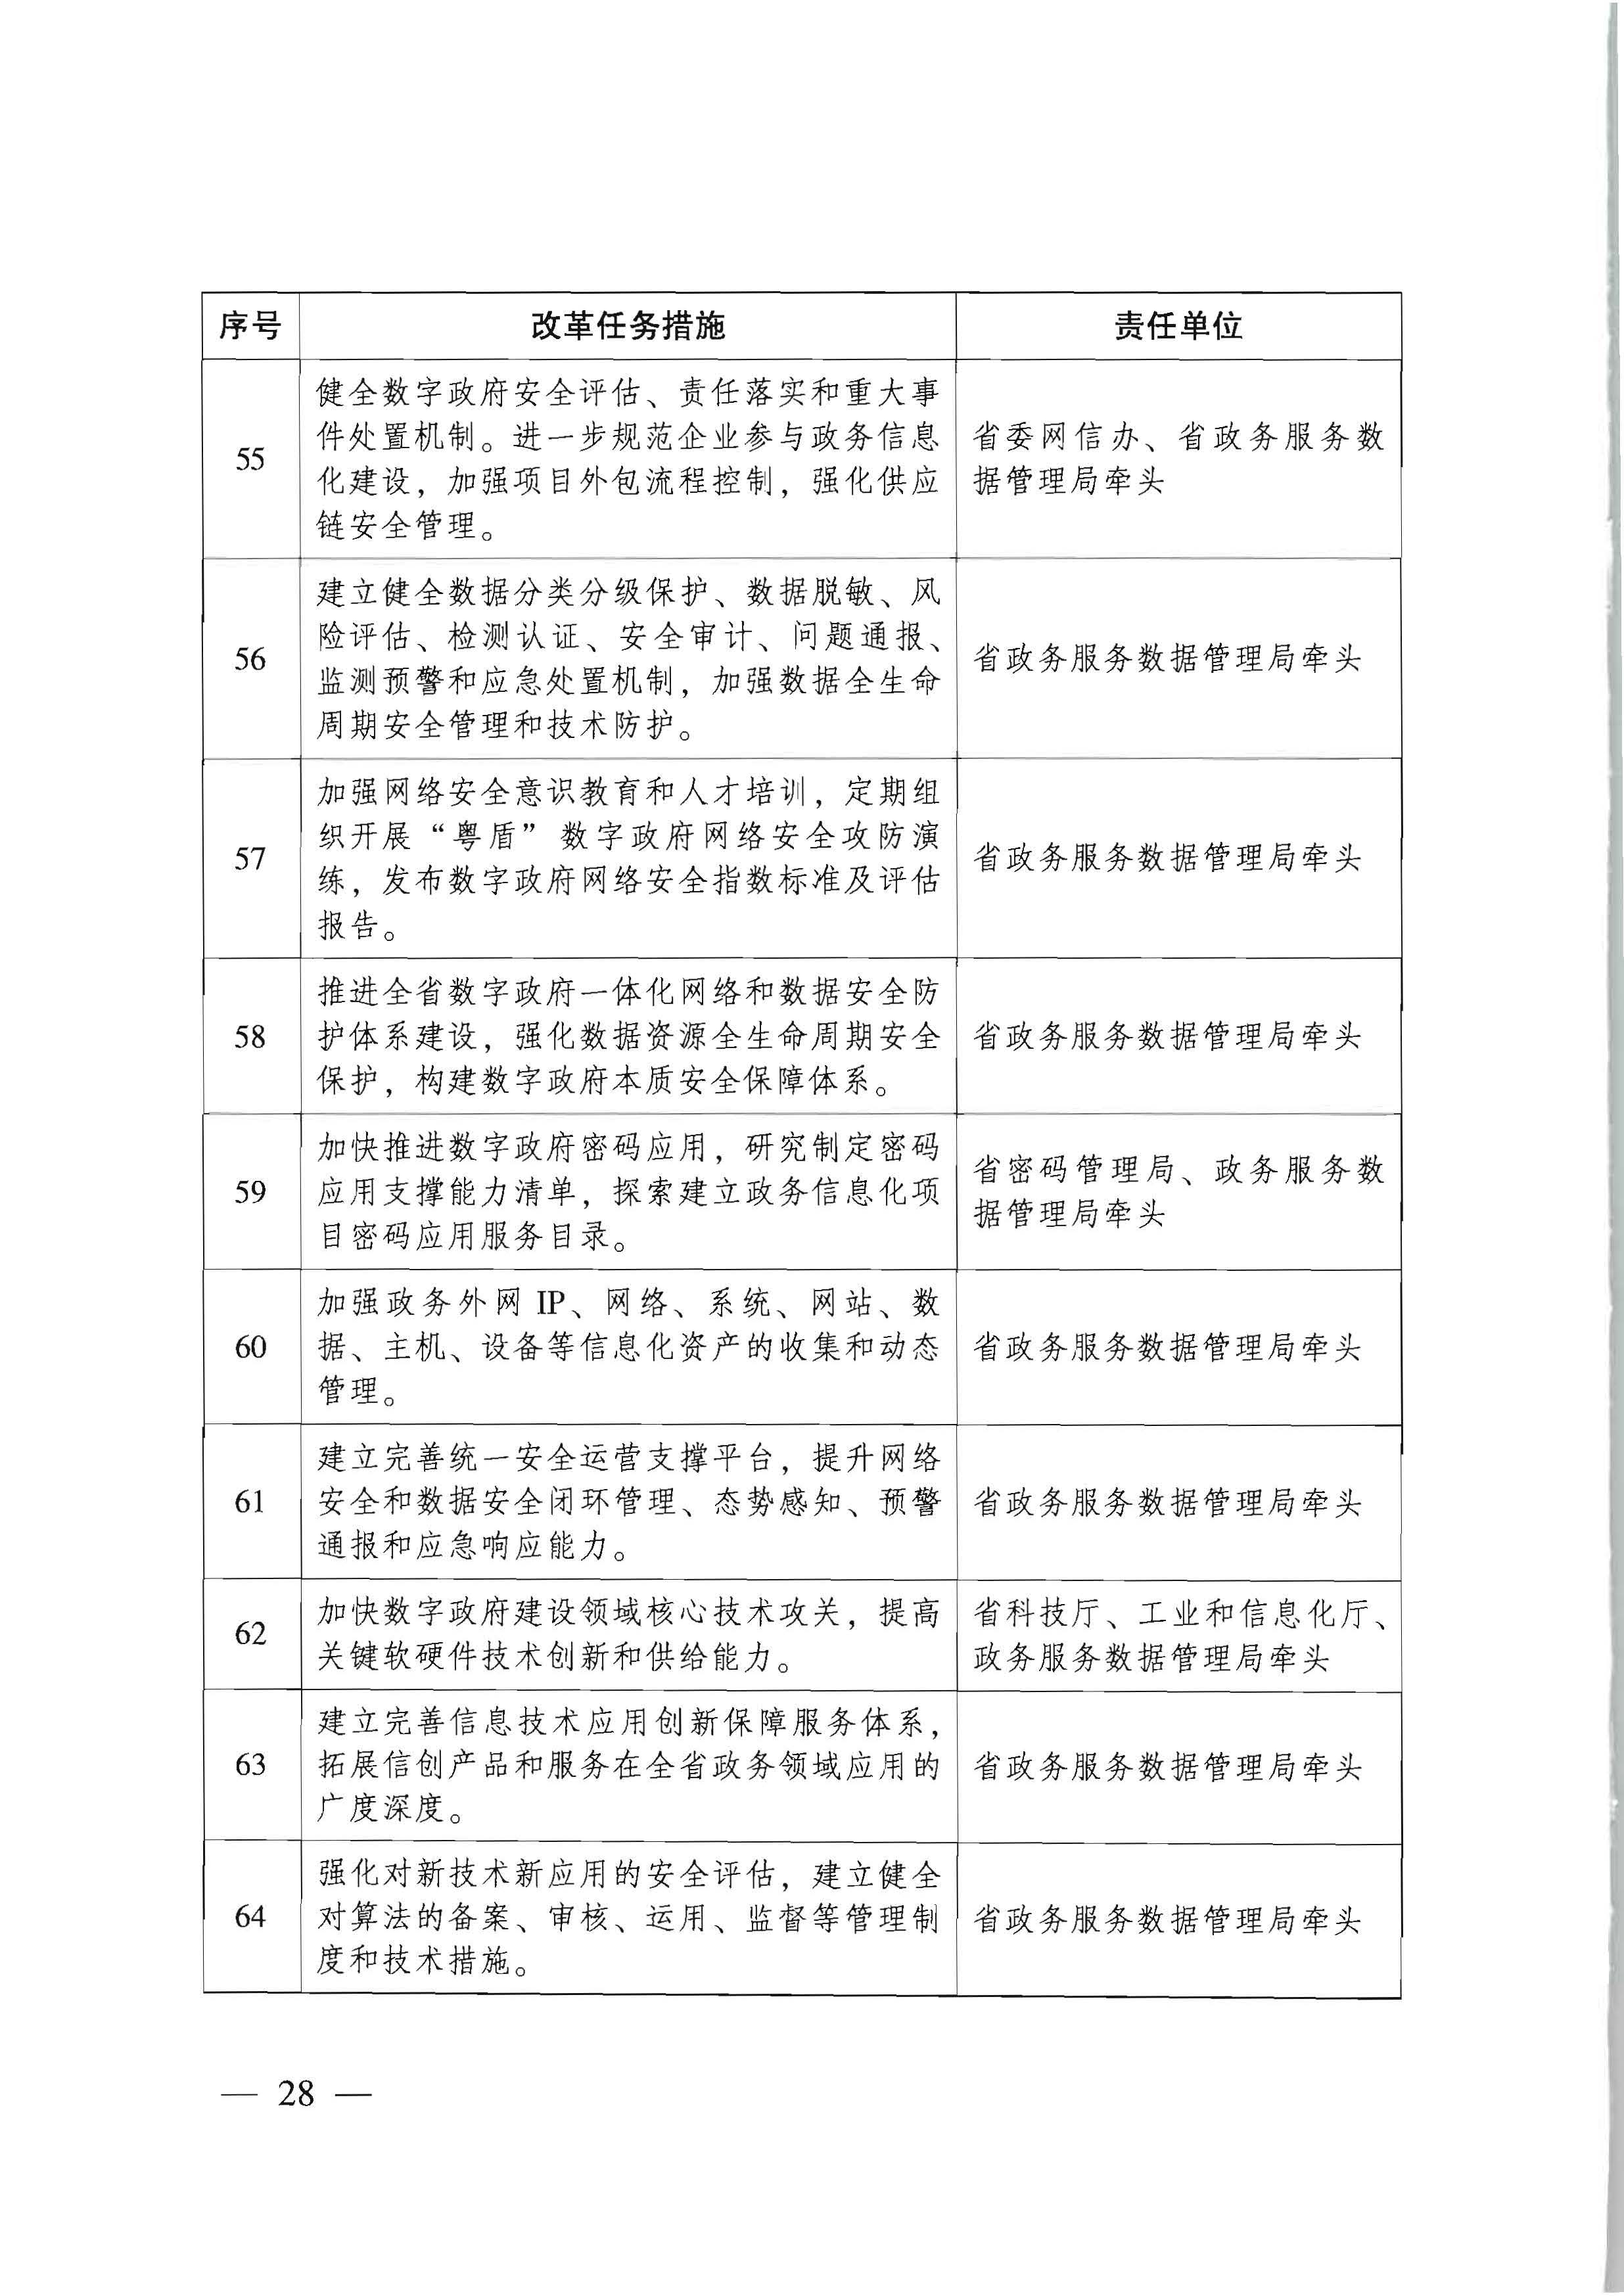 广东省人民政府关于进一步深化数字政府改革建设的实施意见_页面_28.jpg